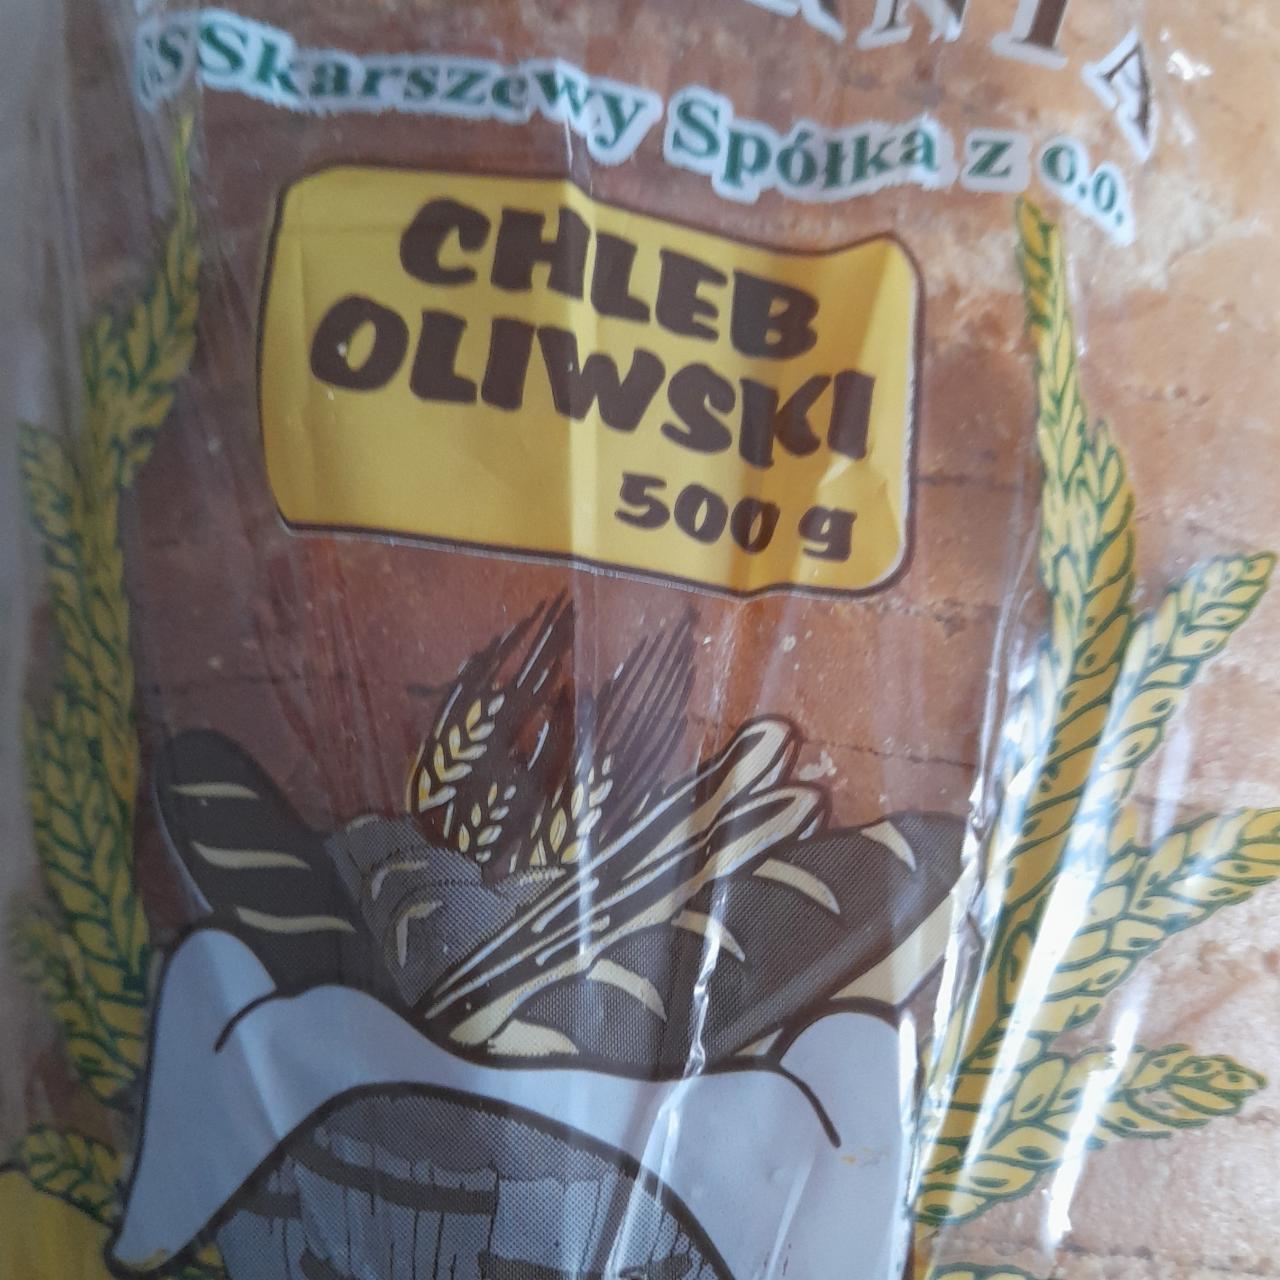 Zdjęcia - chleb oliwski piekarnia skarszewy